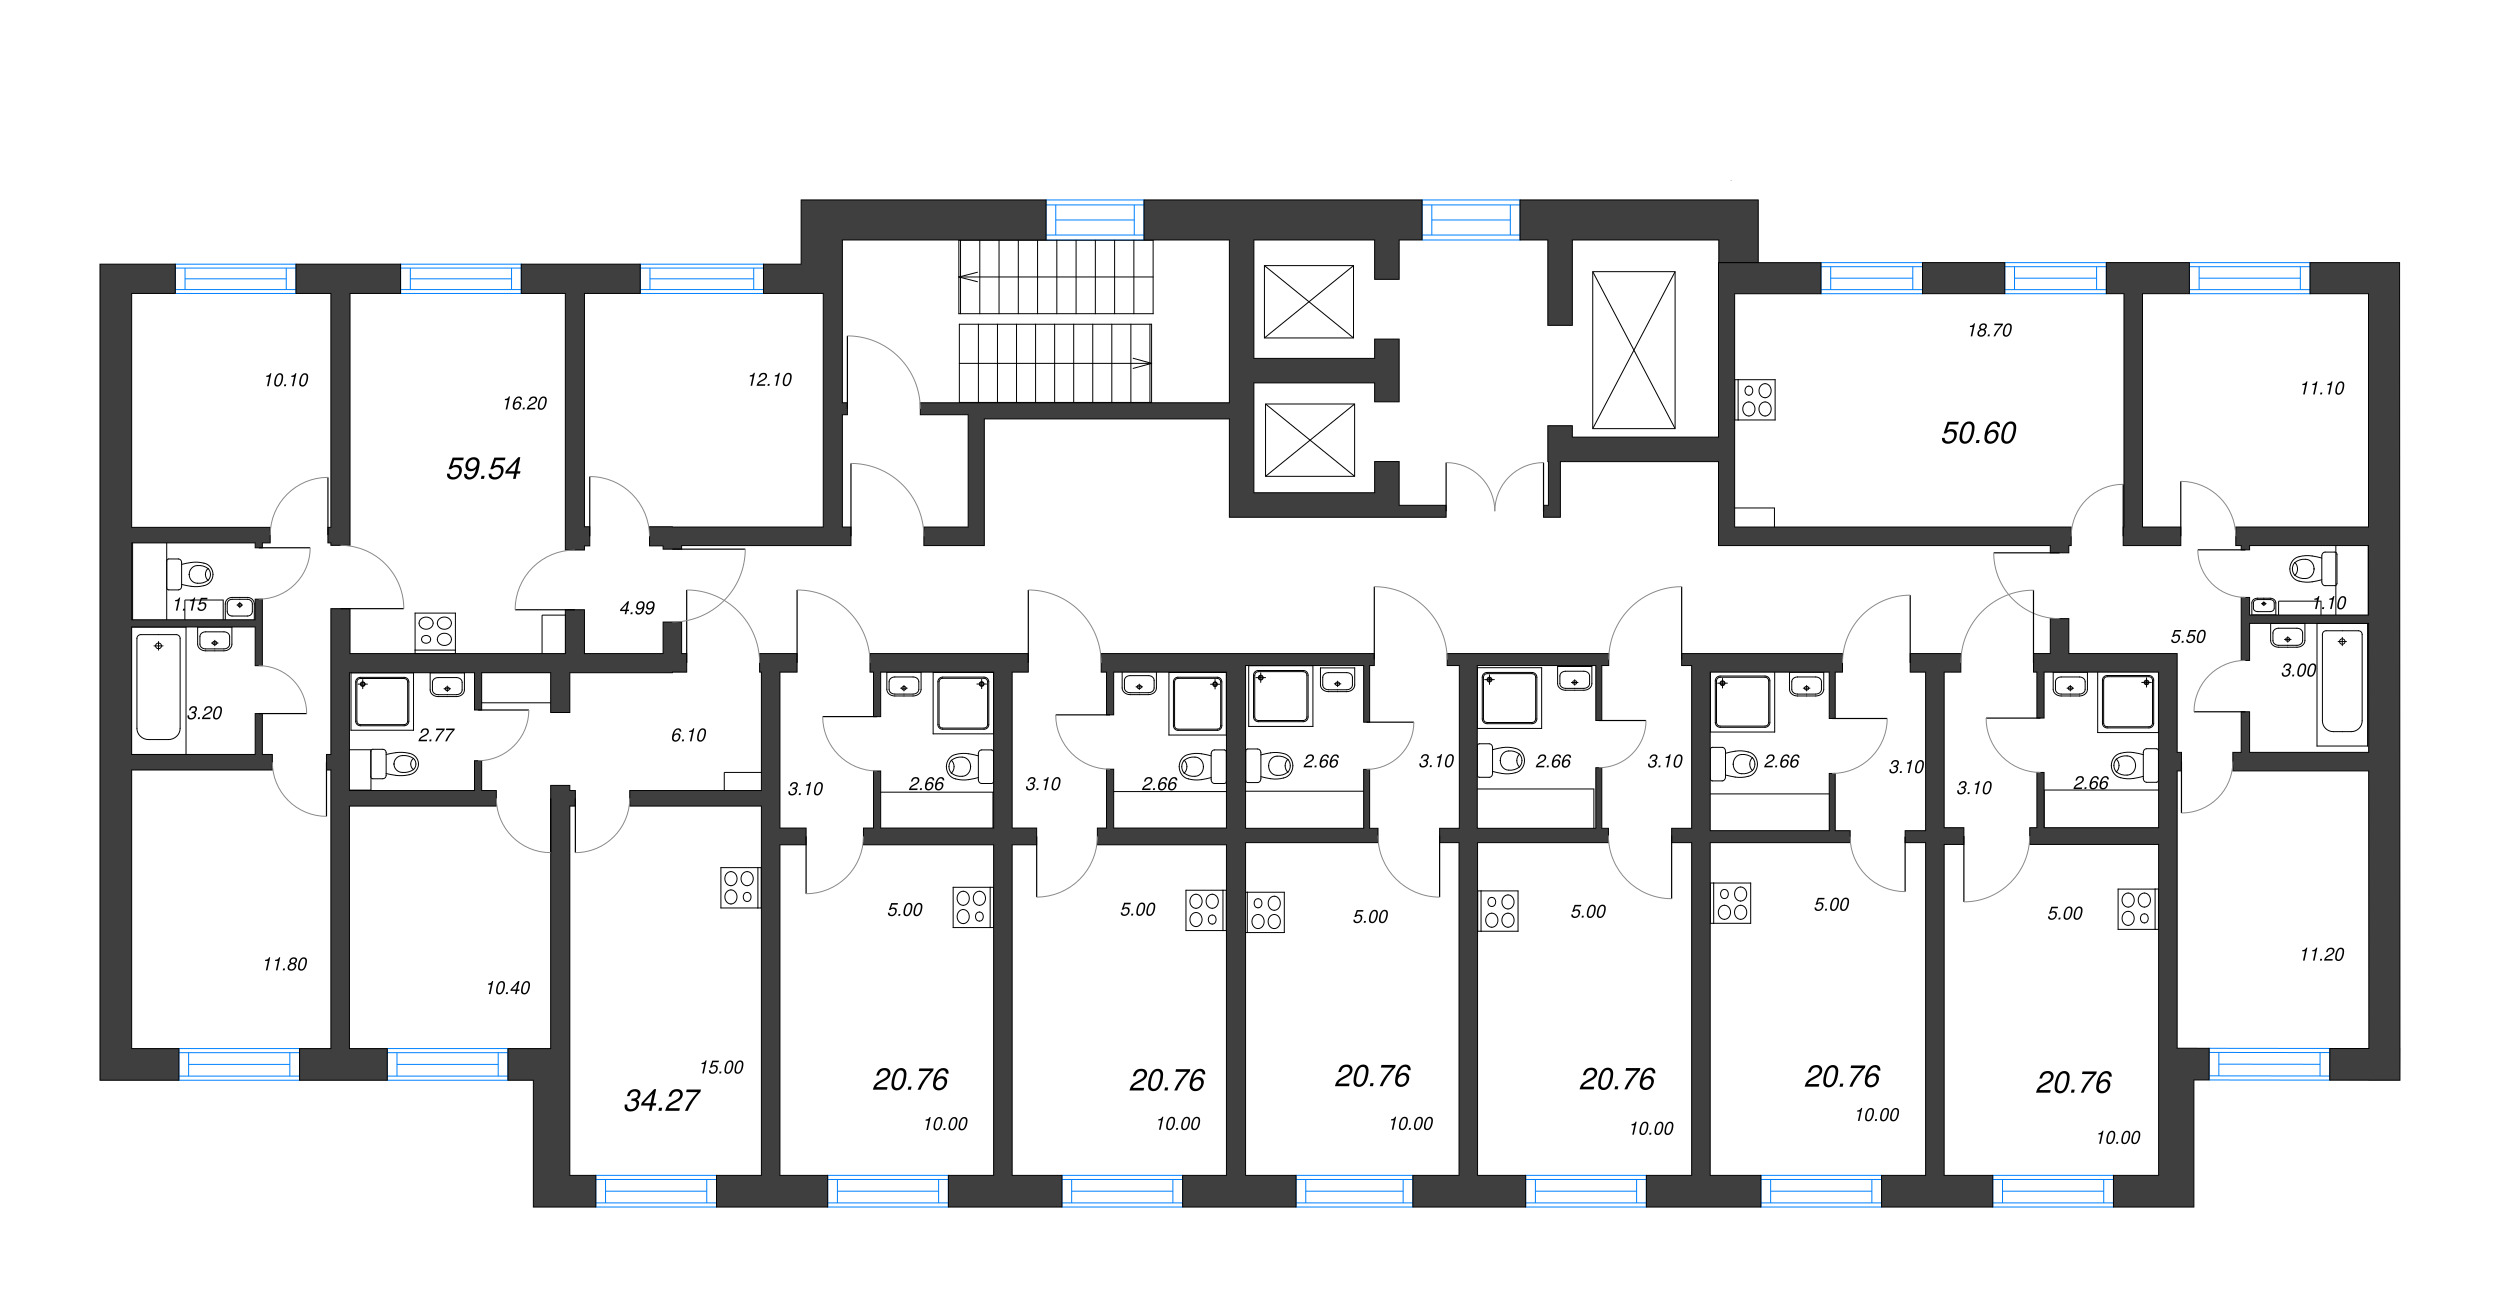 4-комнатная (Евро) квартира, 59.54 м² в ЖК "Ручьи" - планировка этажа